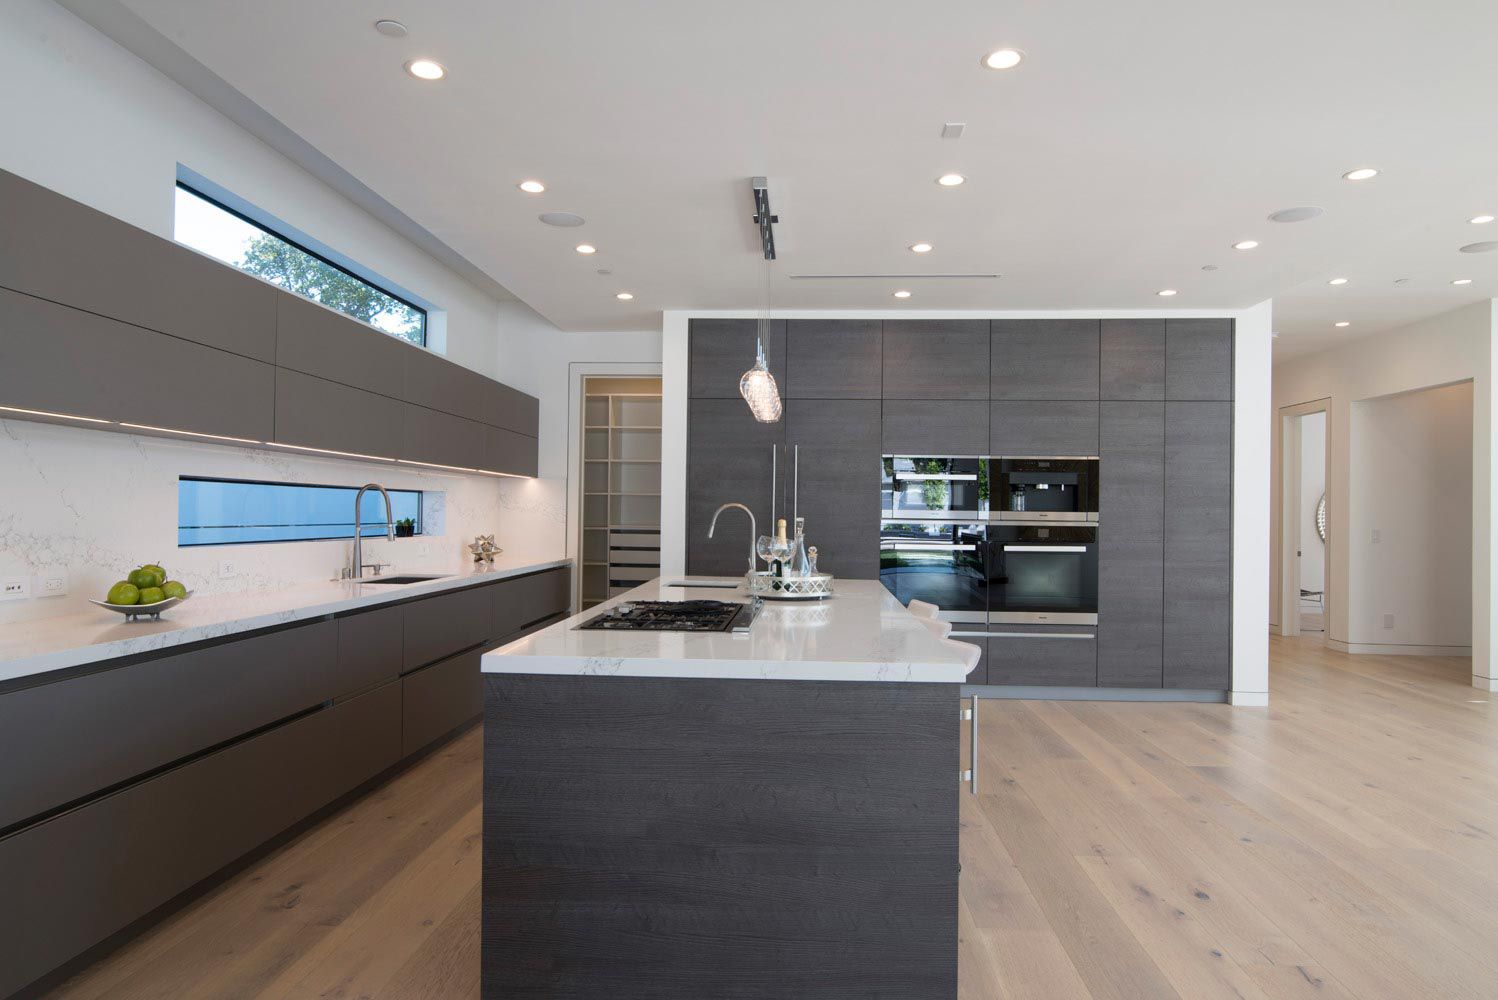 9 Stunning Modern White and Gray Kitchen Designs